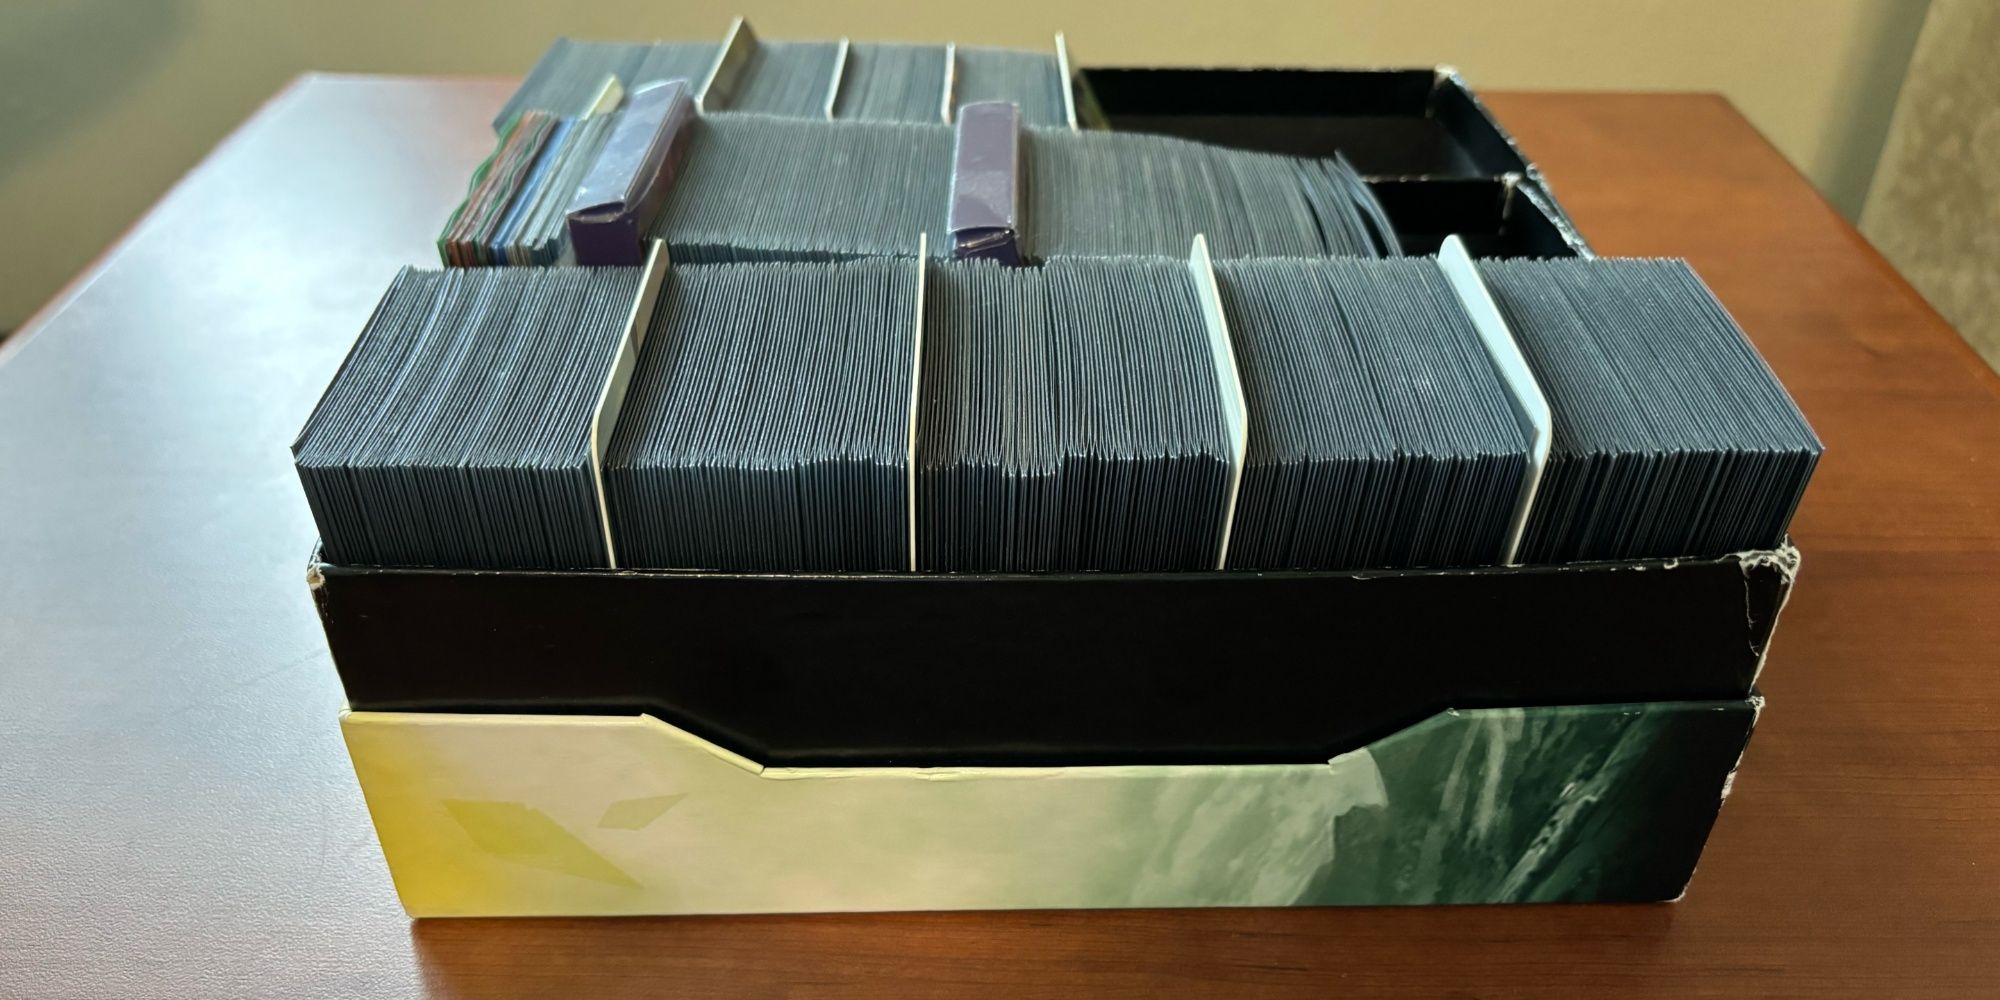 Коробка для хранения, содержащая 450 карт Magic с двойными рукавами, включая базовые земли и жетоны.